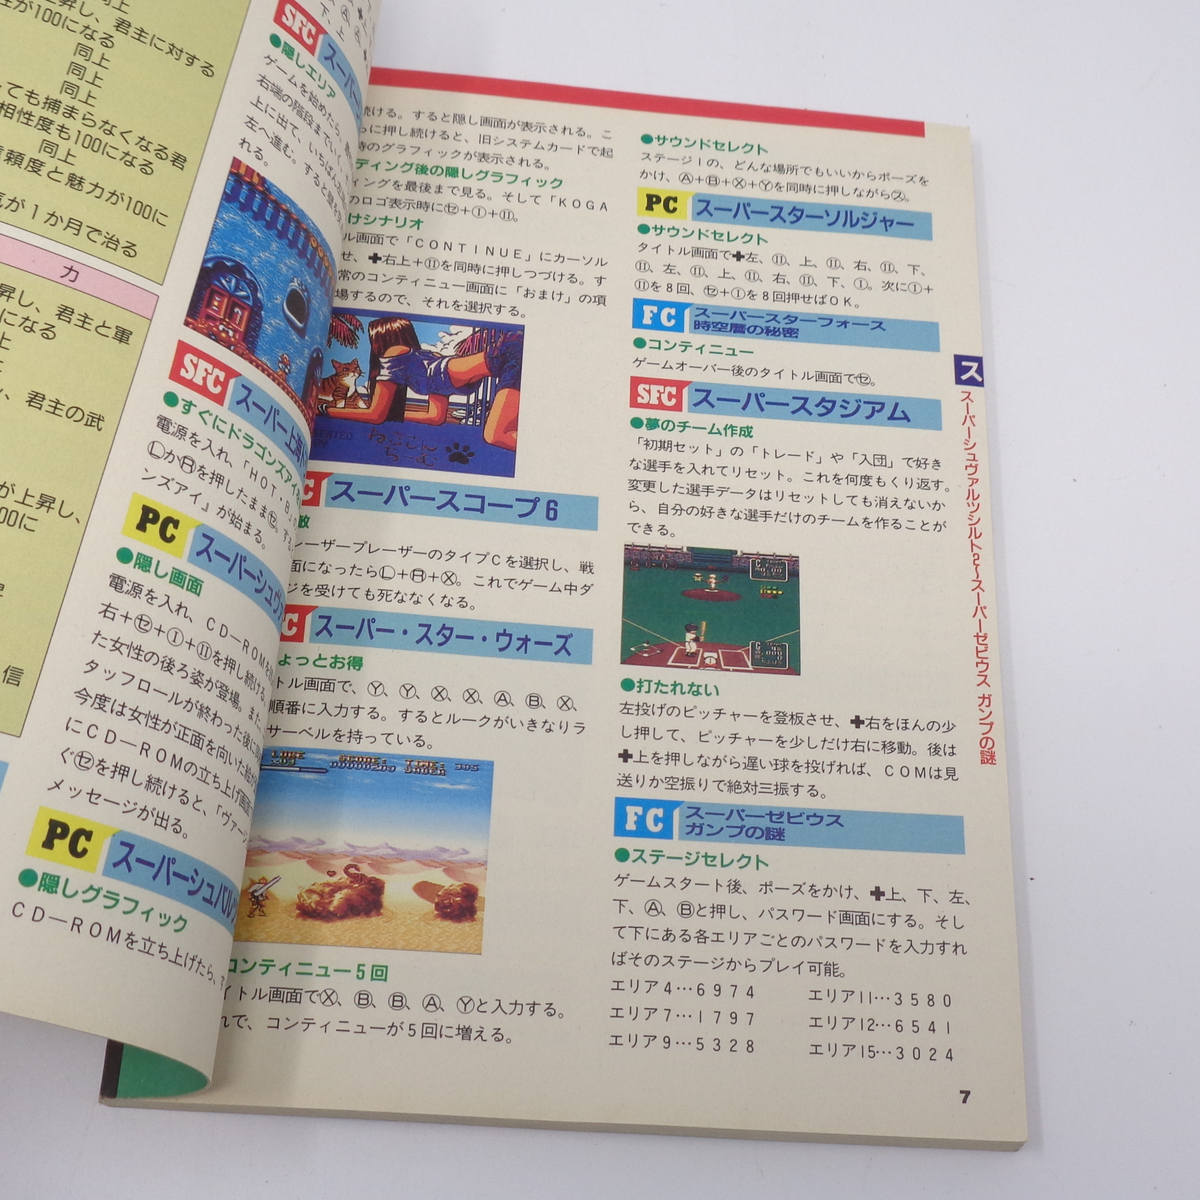 2冊セット 電撃ウラワザ王 vol.1 Vol.2 /電撃スーパーファミコン 1994年 別冊付録/ゲーム雑誌付録[Free Shipping] 